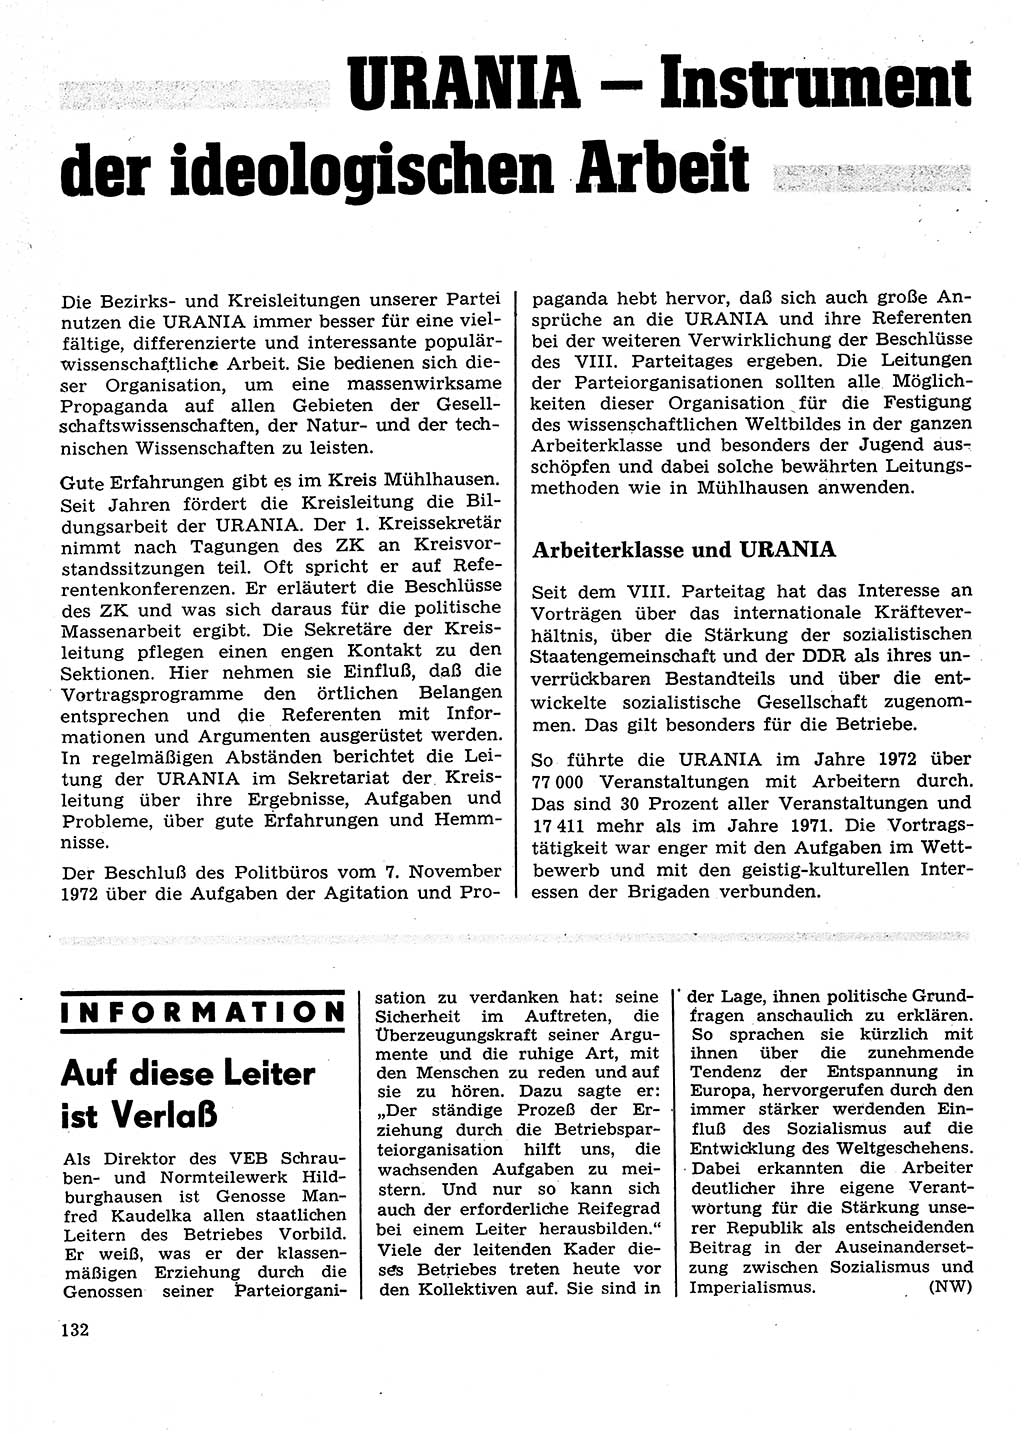 Neuer Weg (NW), Organ des Zentralkomitees (ZK) der SED (Sozialistische Einheitspartei Deutschlands) für Fragen des Parteilebens, 28. Jahrgang [Deutsche Demokratische Republik (DDR)] 1973, Seite 132 (NW ZK SED DDR 1973, S. 132)